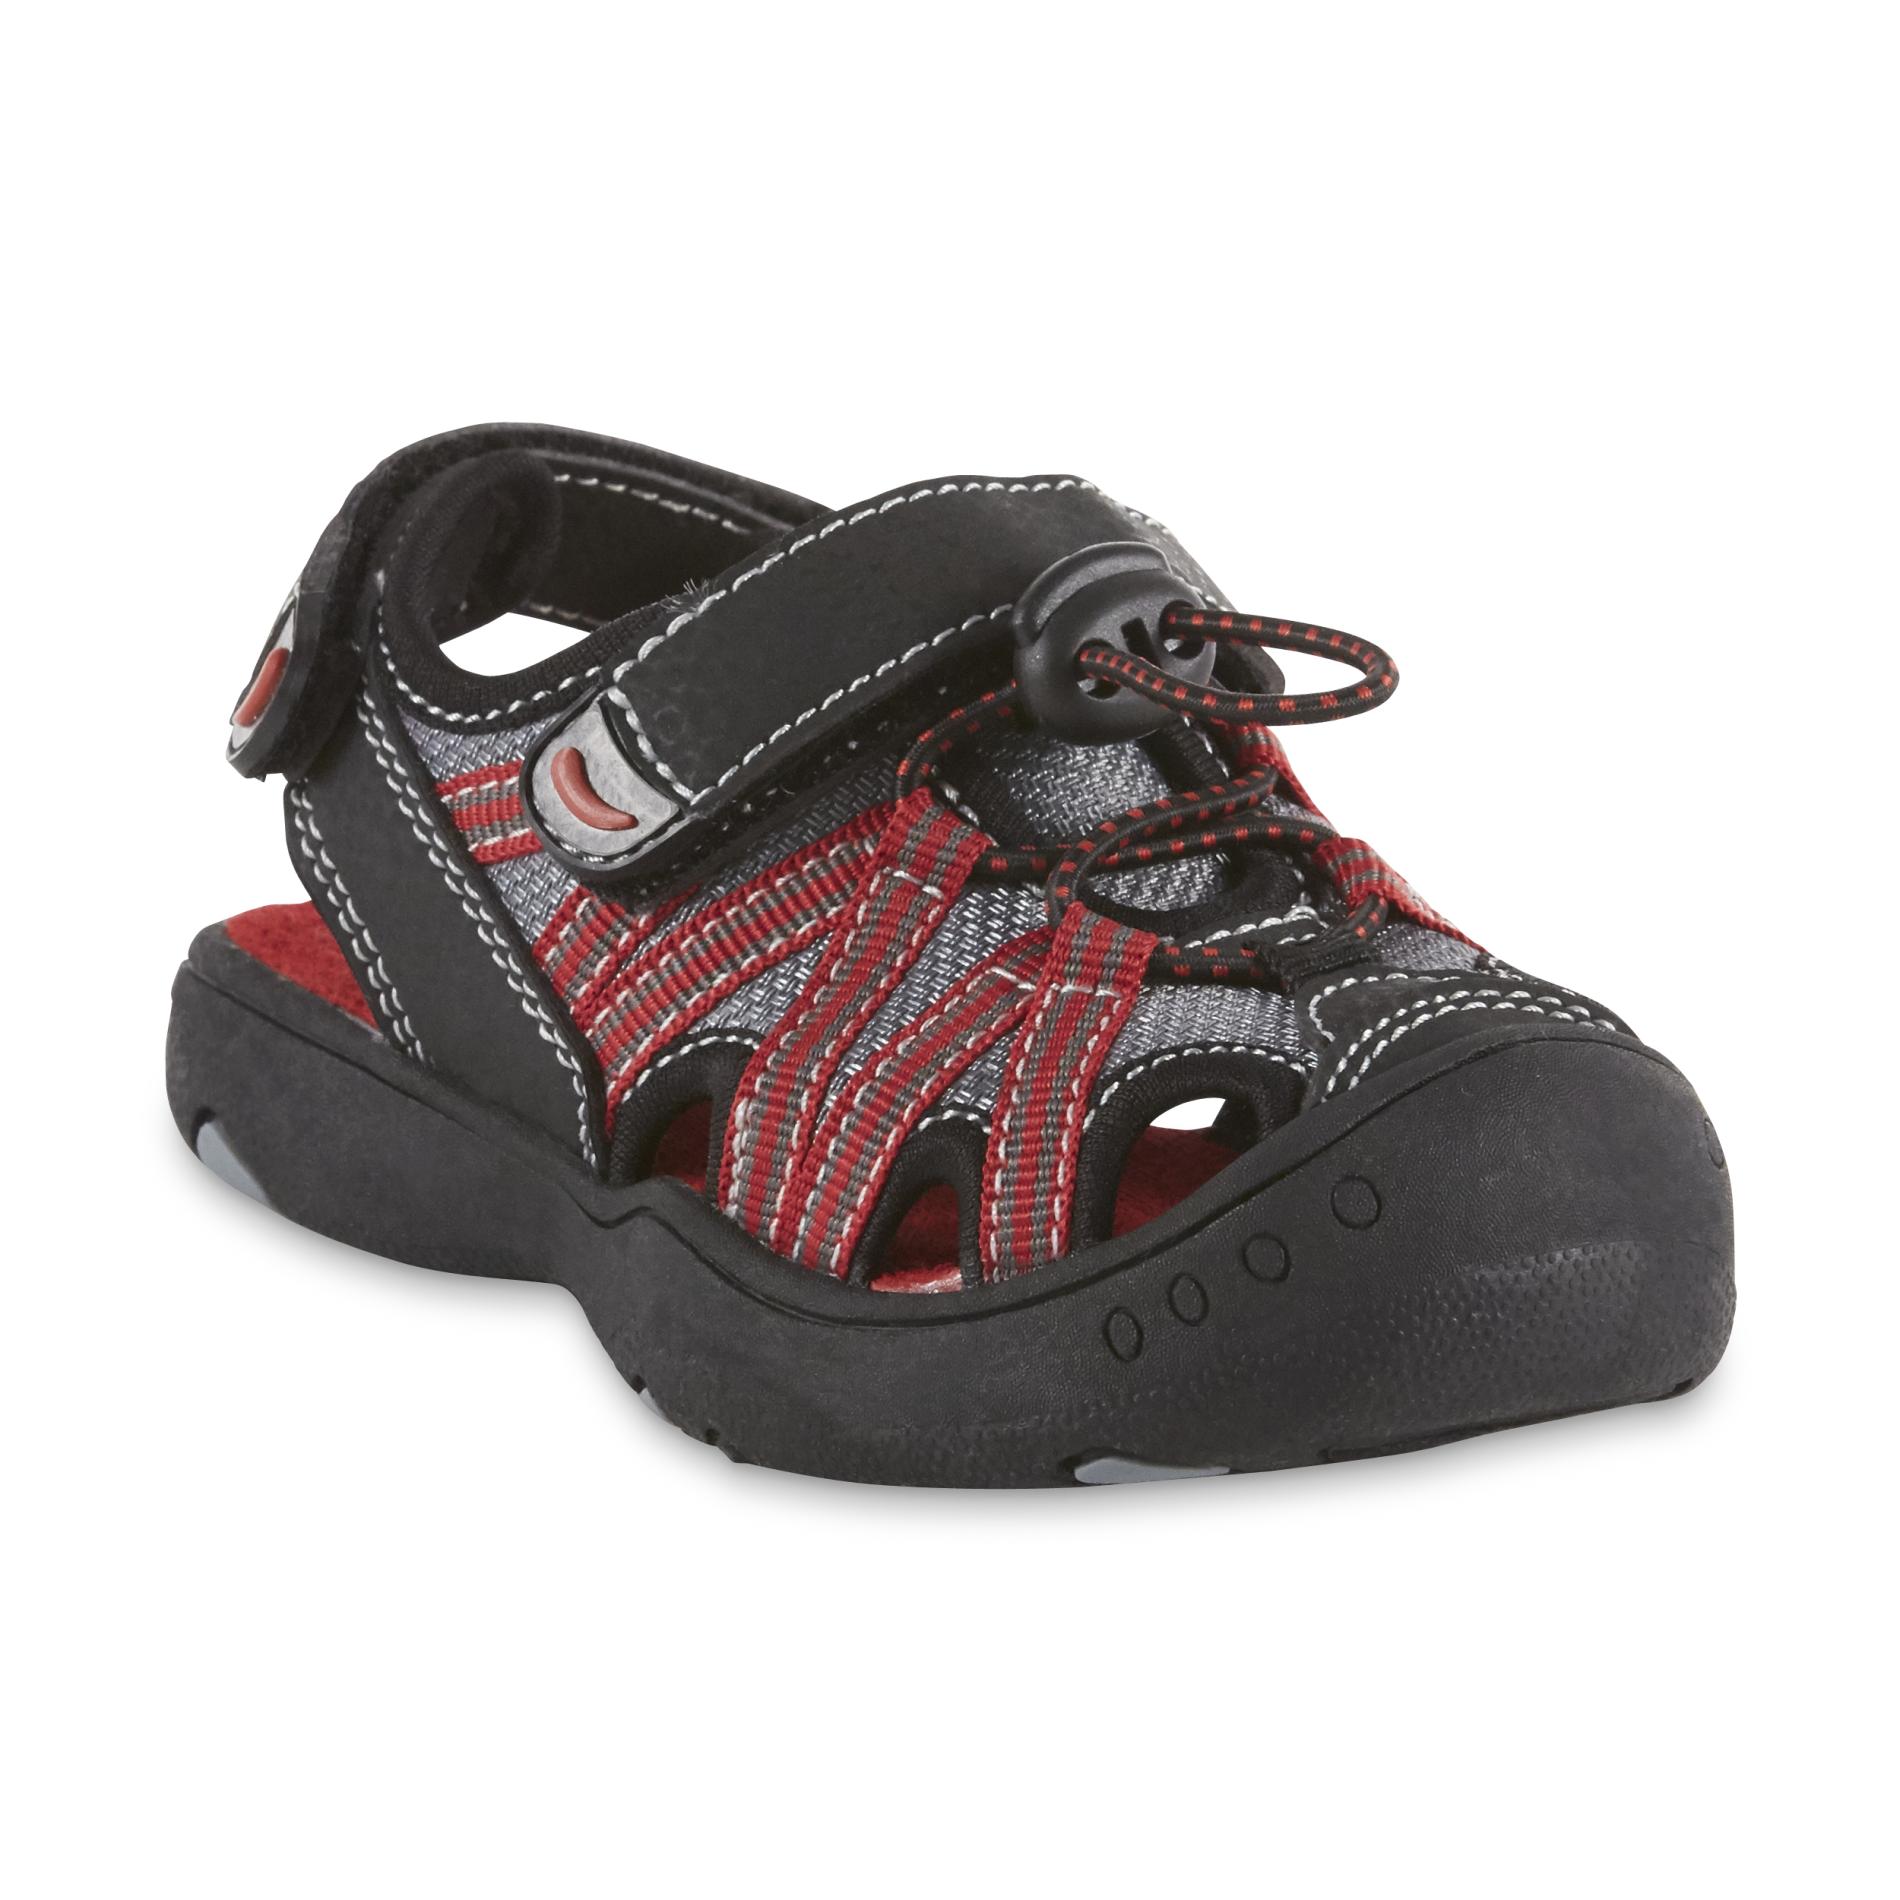 Roebuck & Co. Toddler Boys' Stevie Sport Sandal - Black/Red